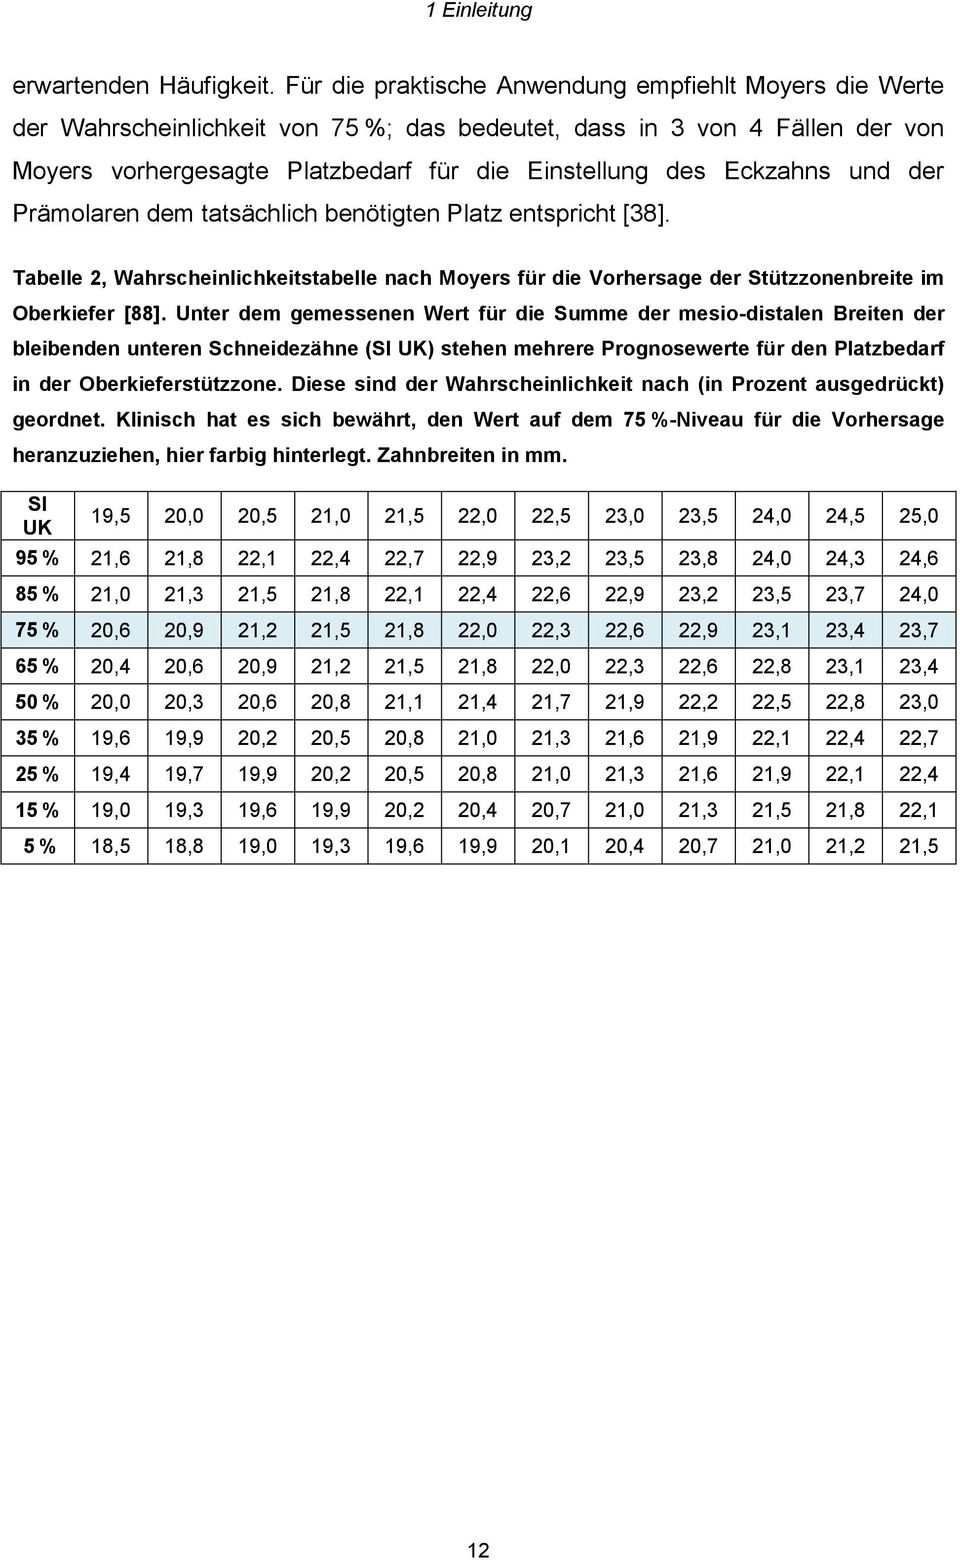 und der Prämolaren dem tatsächlich benötigten Platz entspricht [38]. Tabelle 2, Wahrscheinlichkeitstabelle nach Moyers für die Vorhersage der Stützzonenbreite im Oberkiefer [88].